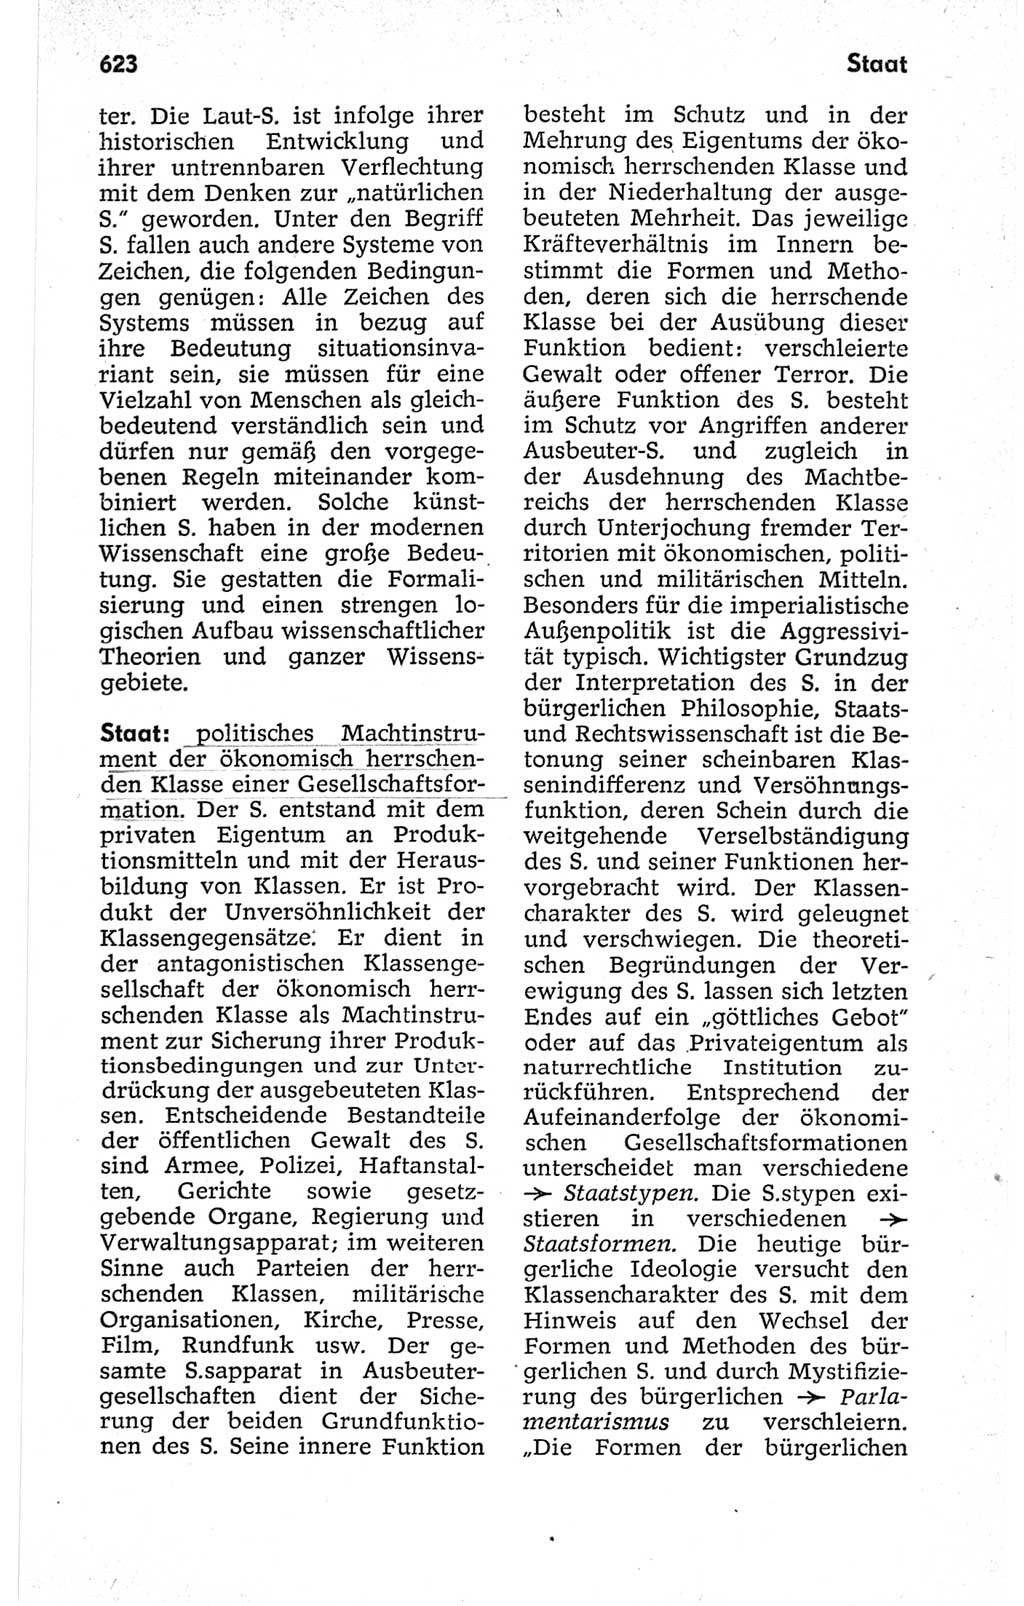 Kleines politisches Wörterbuch [Deutsche Demokratische Republik (DDR)] 1967, Seite 623 (Kl. pol. Wb. DDR 1967, S. 623)